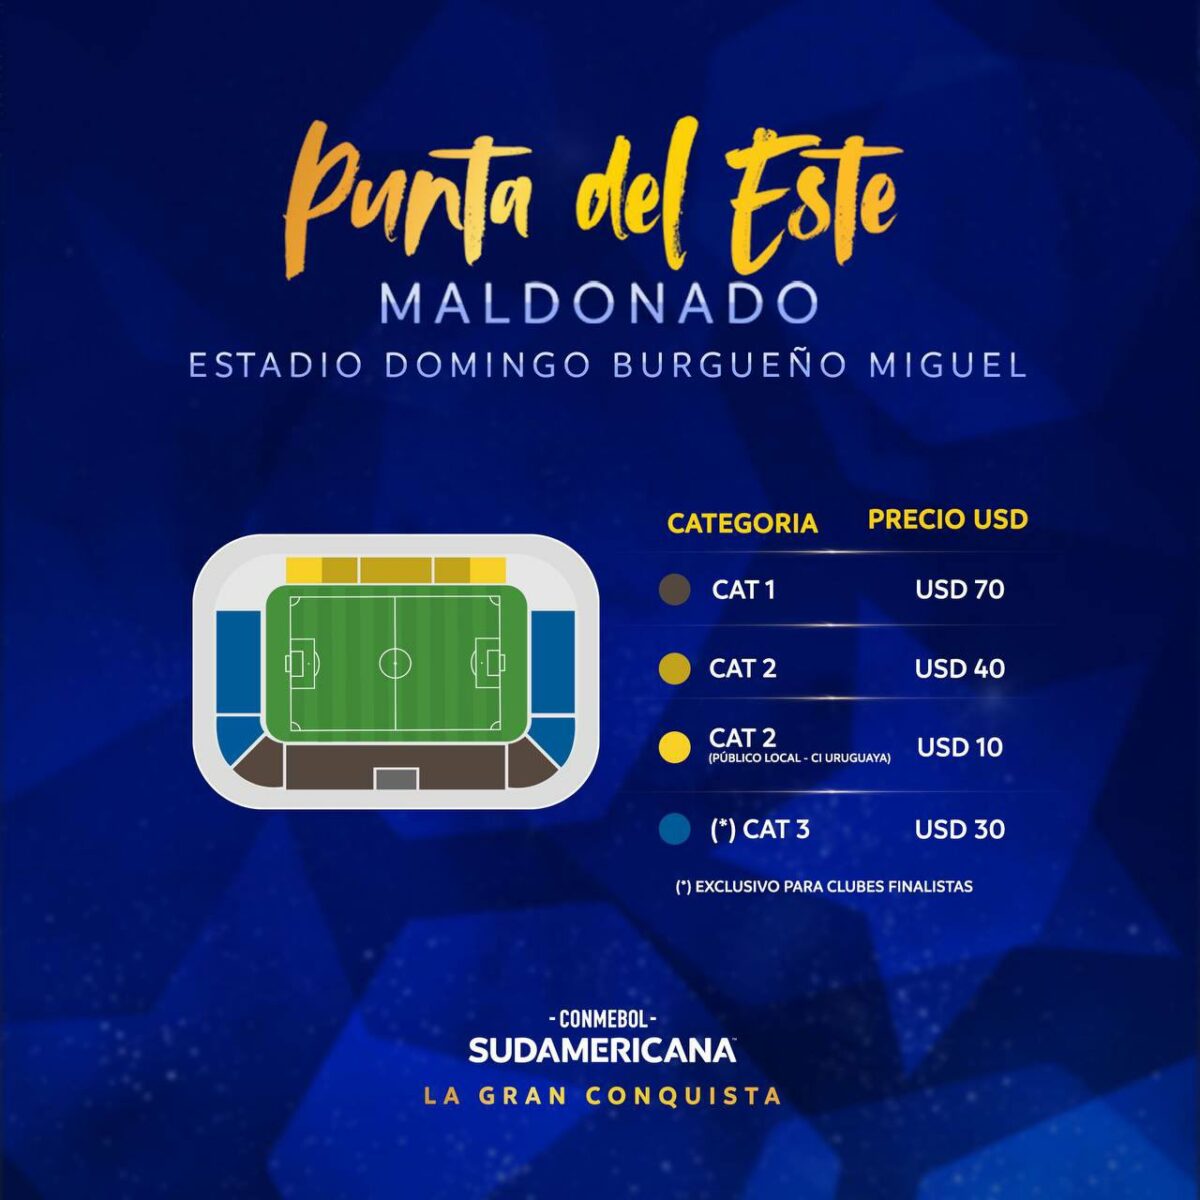 Precios de las entradas para la final de la Copa Sudamericana. 